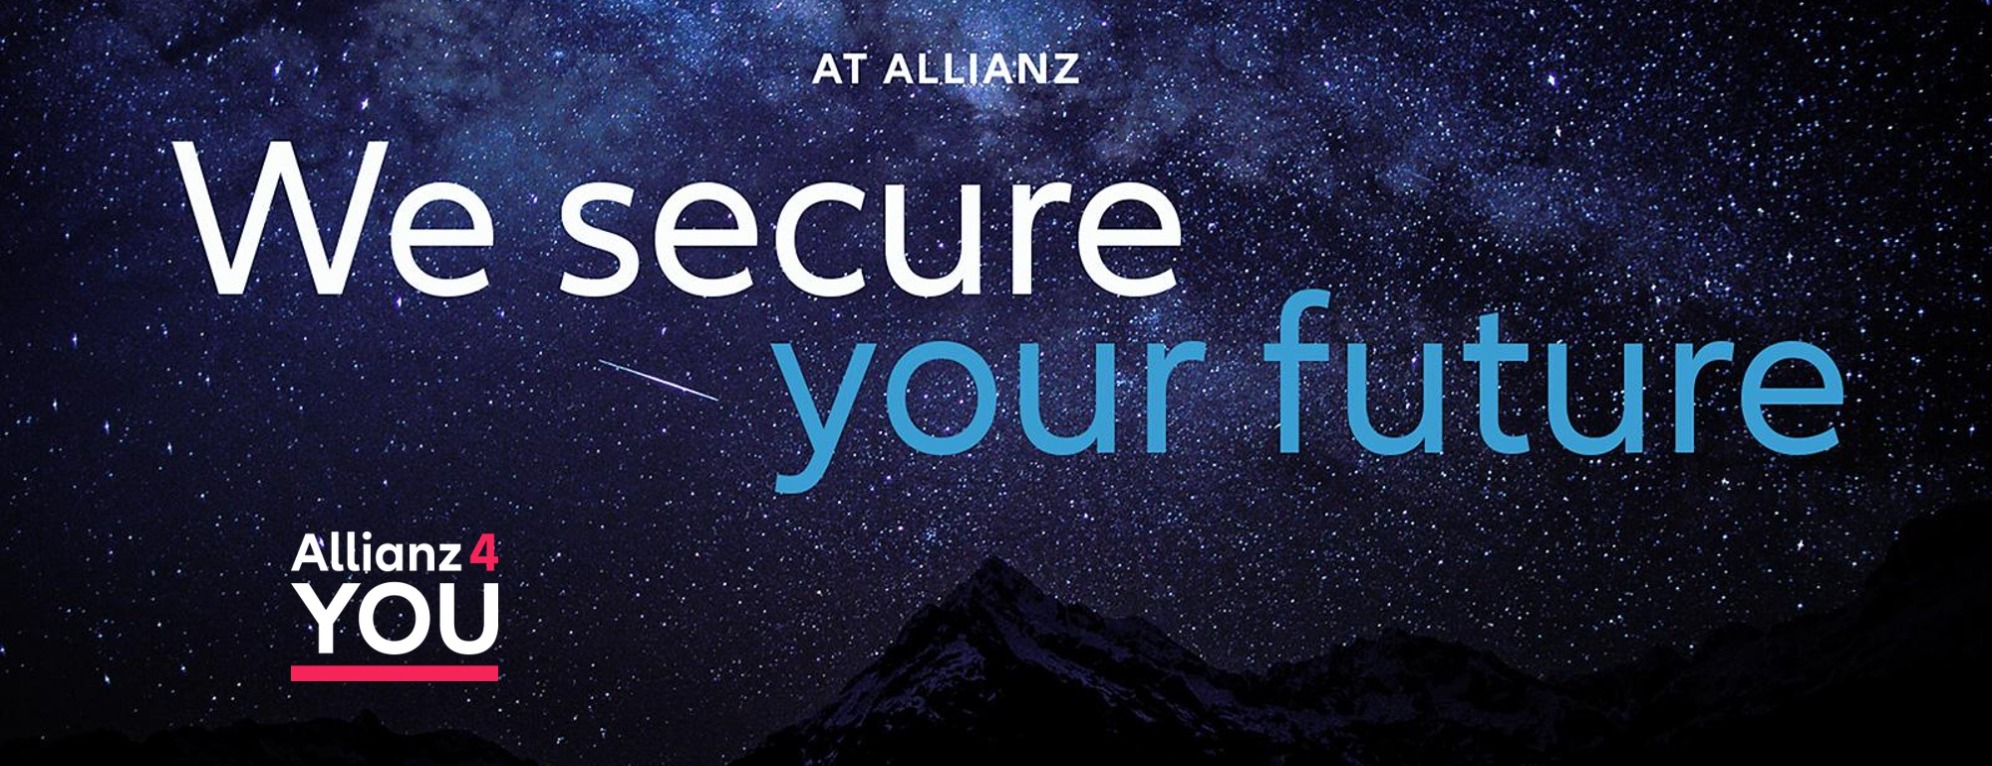 Allianz Versicherung Allianz 4 YOU Schwabing München - Titelbild